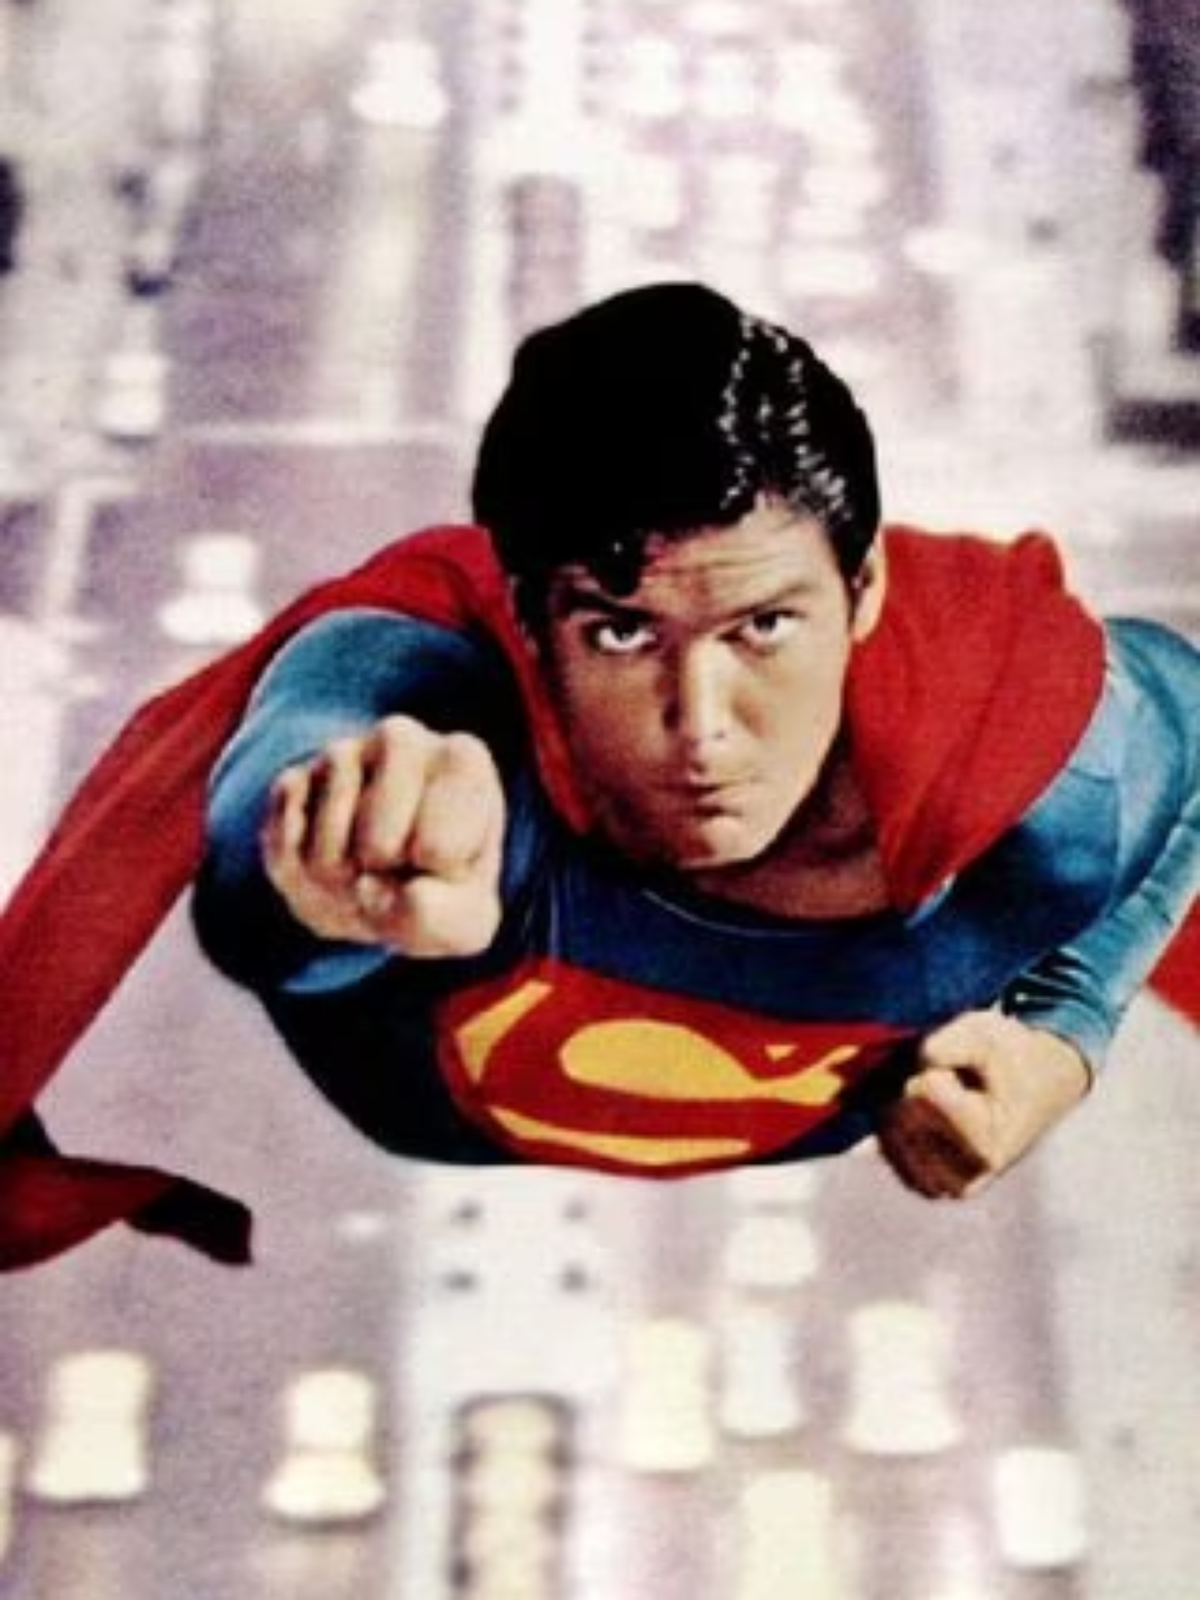 Versão lendária de Superman: O Filme, com três horas de duração